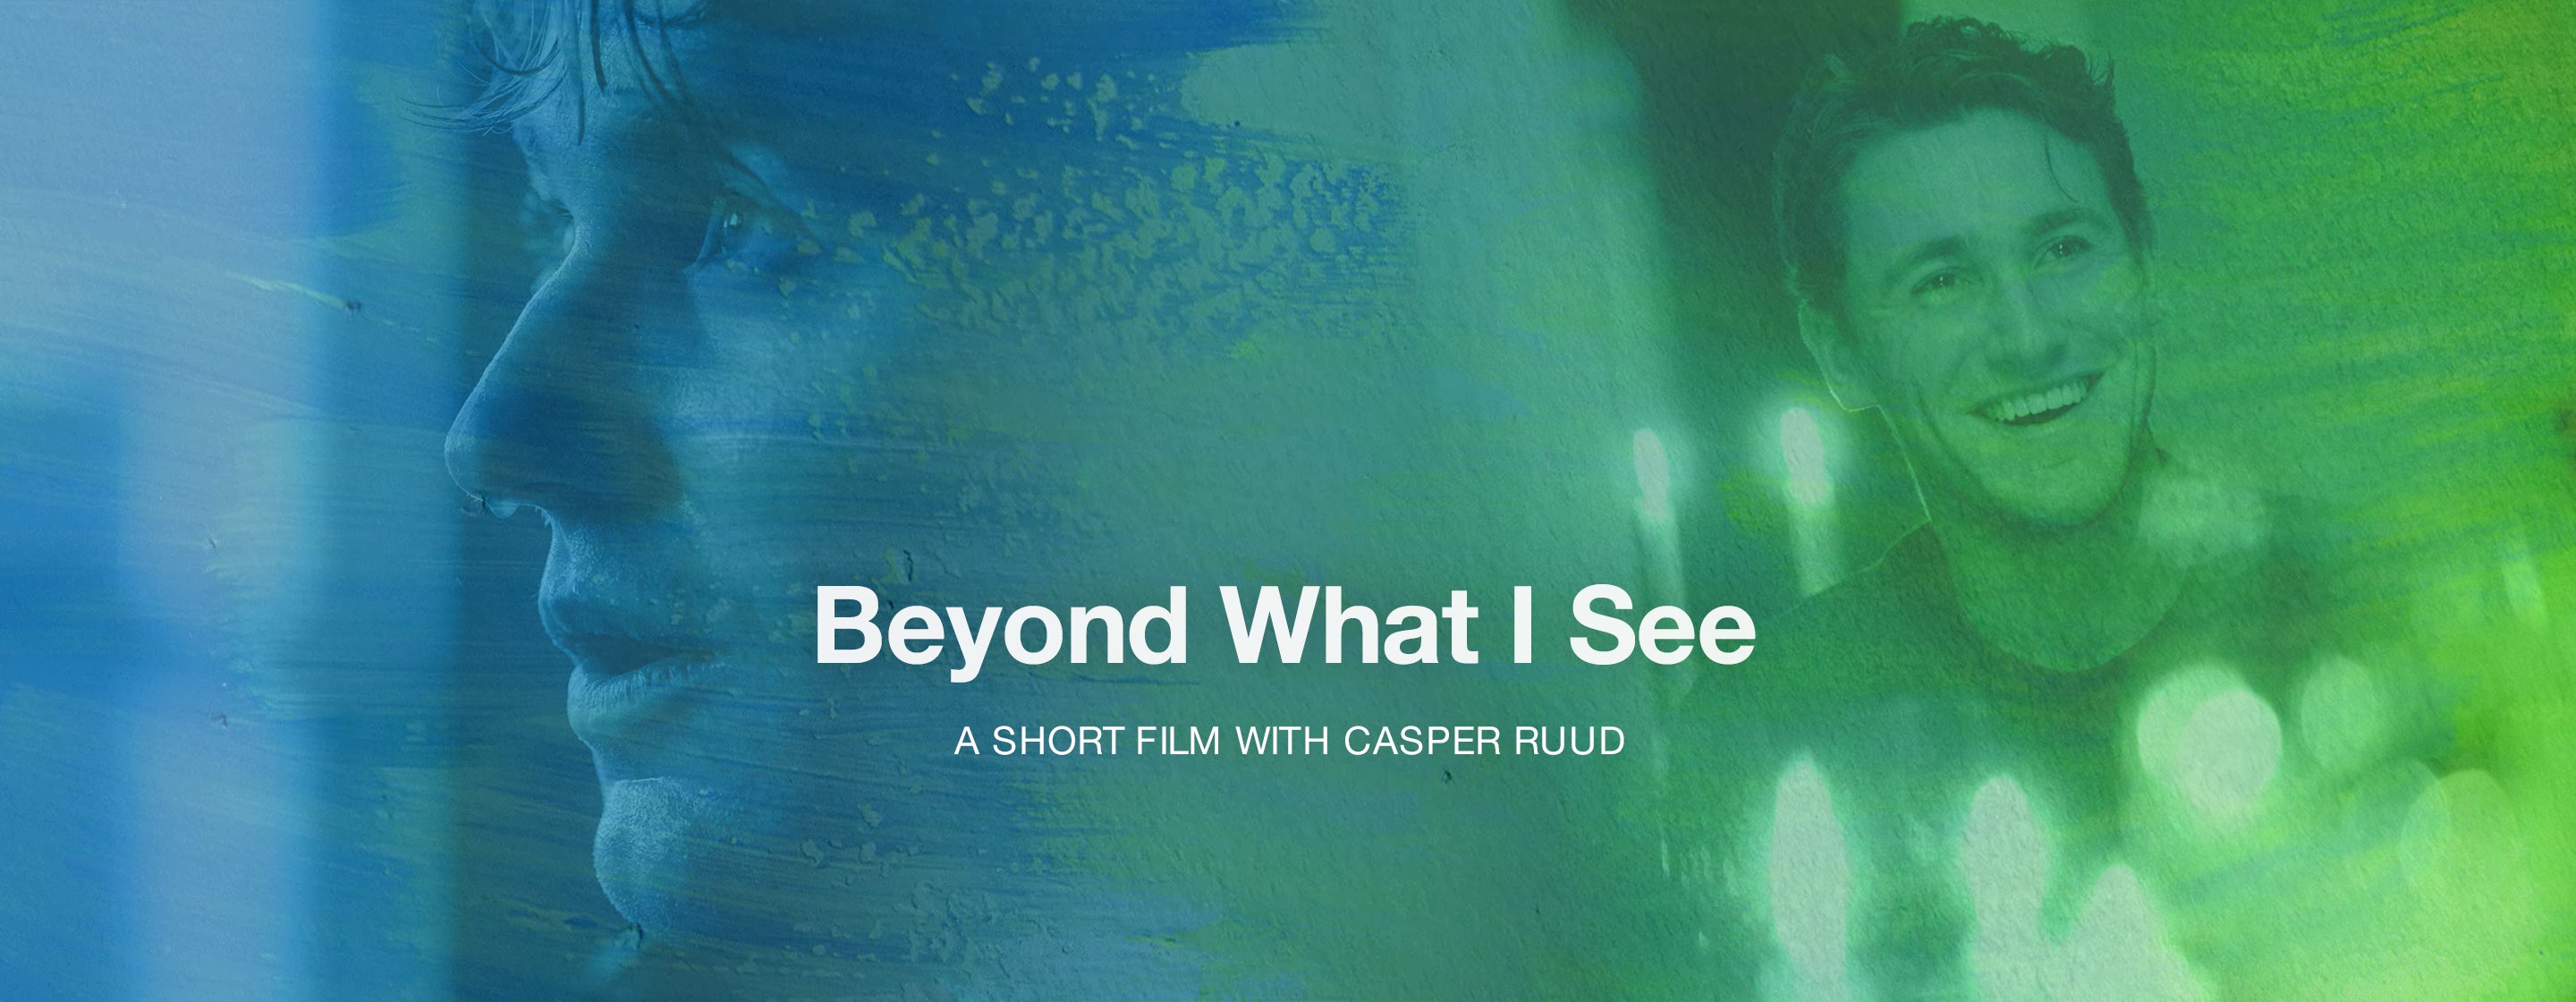 Beyond What I See Casper Ruud